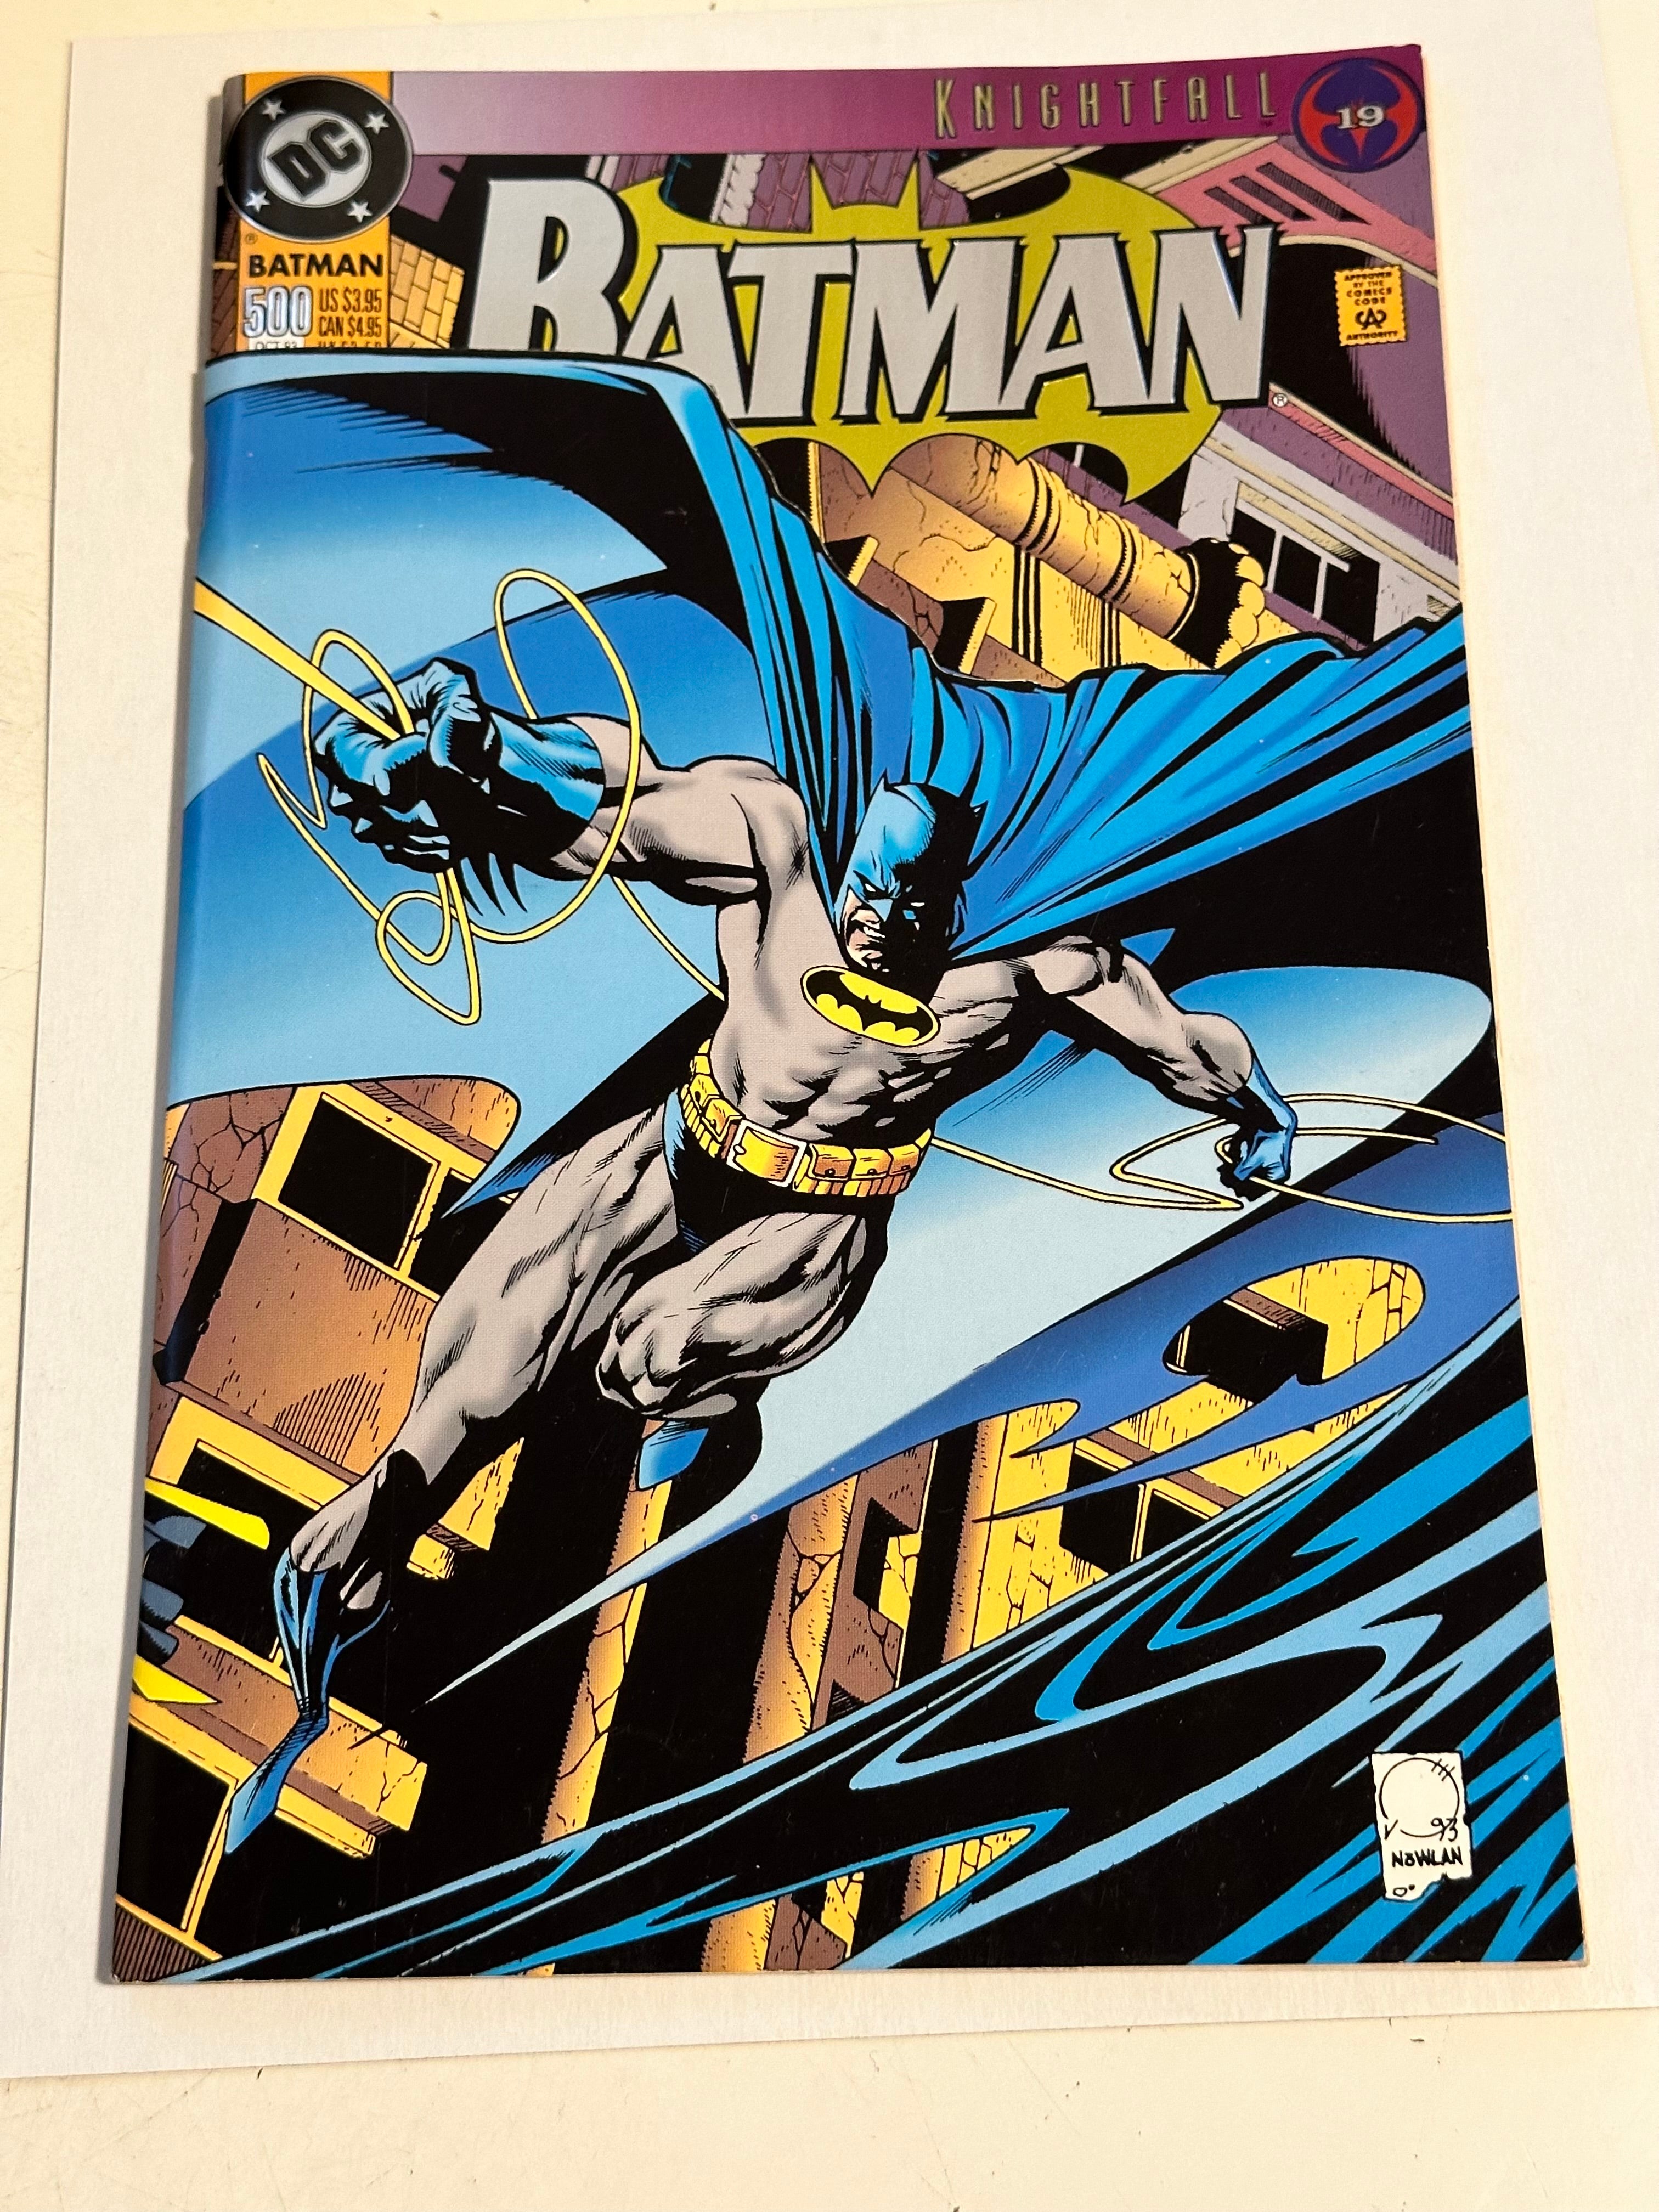 Batman #500 high grade condition comic book 1993